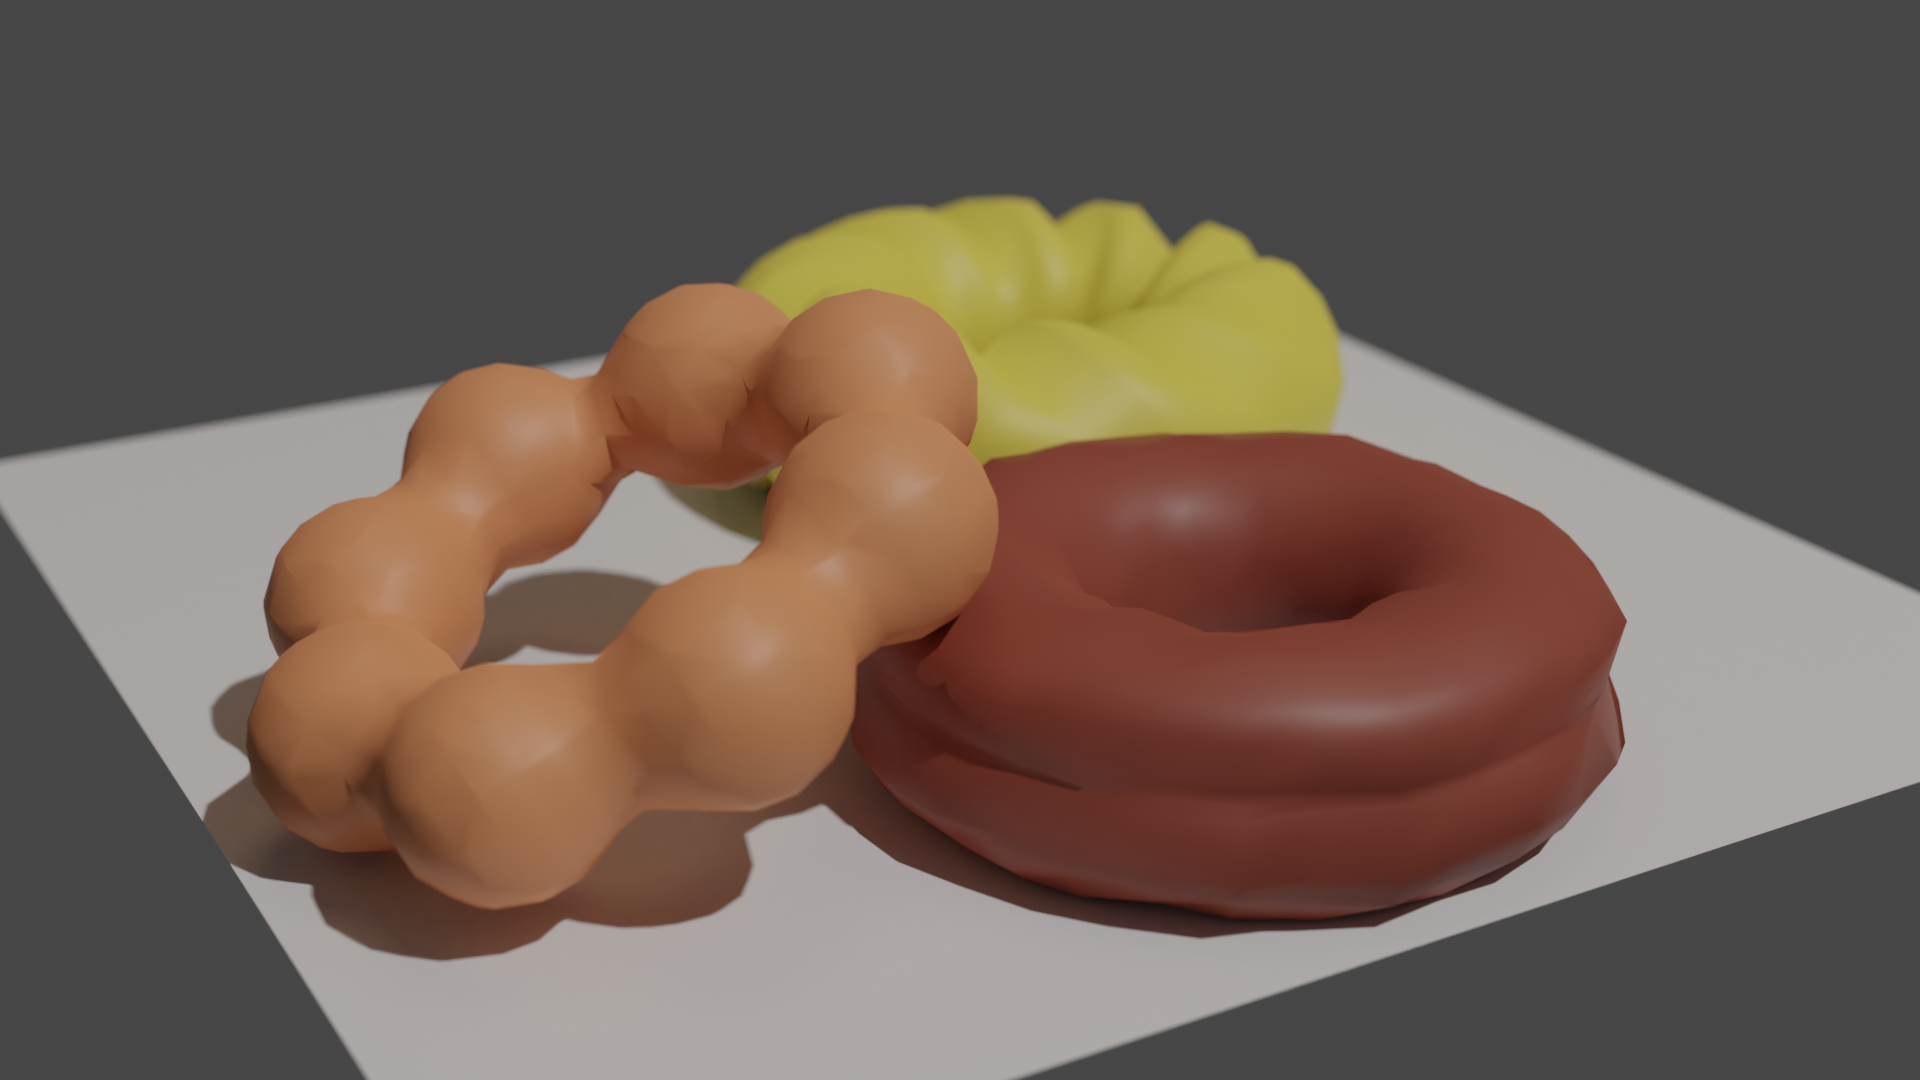 Blender で簡単! ドーナツをモデリング : チョコリング、フレンチクルーラー、ポンデリング